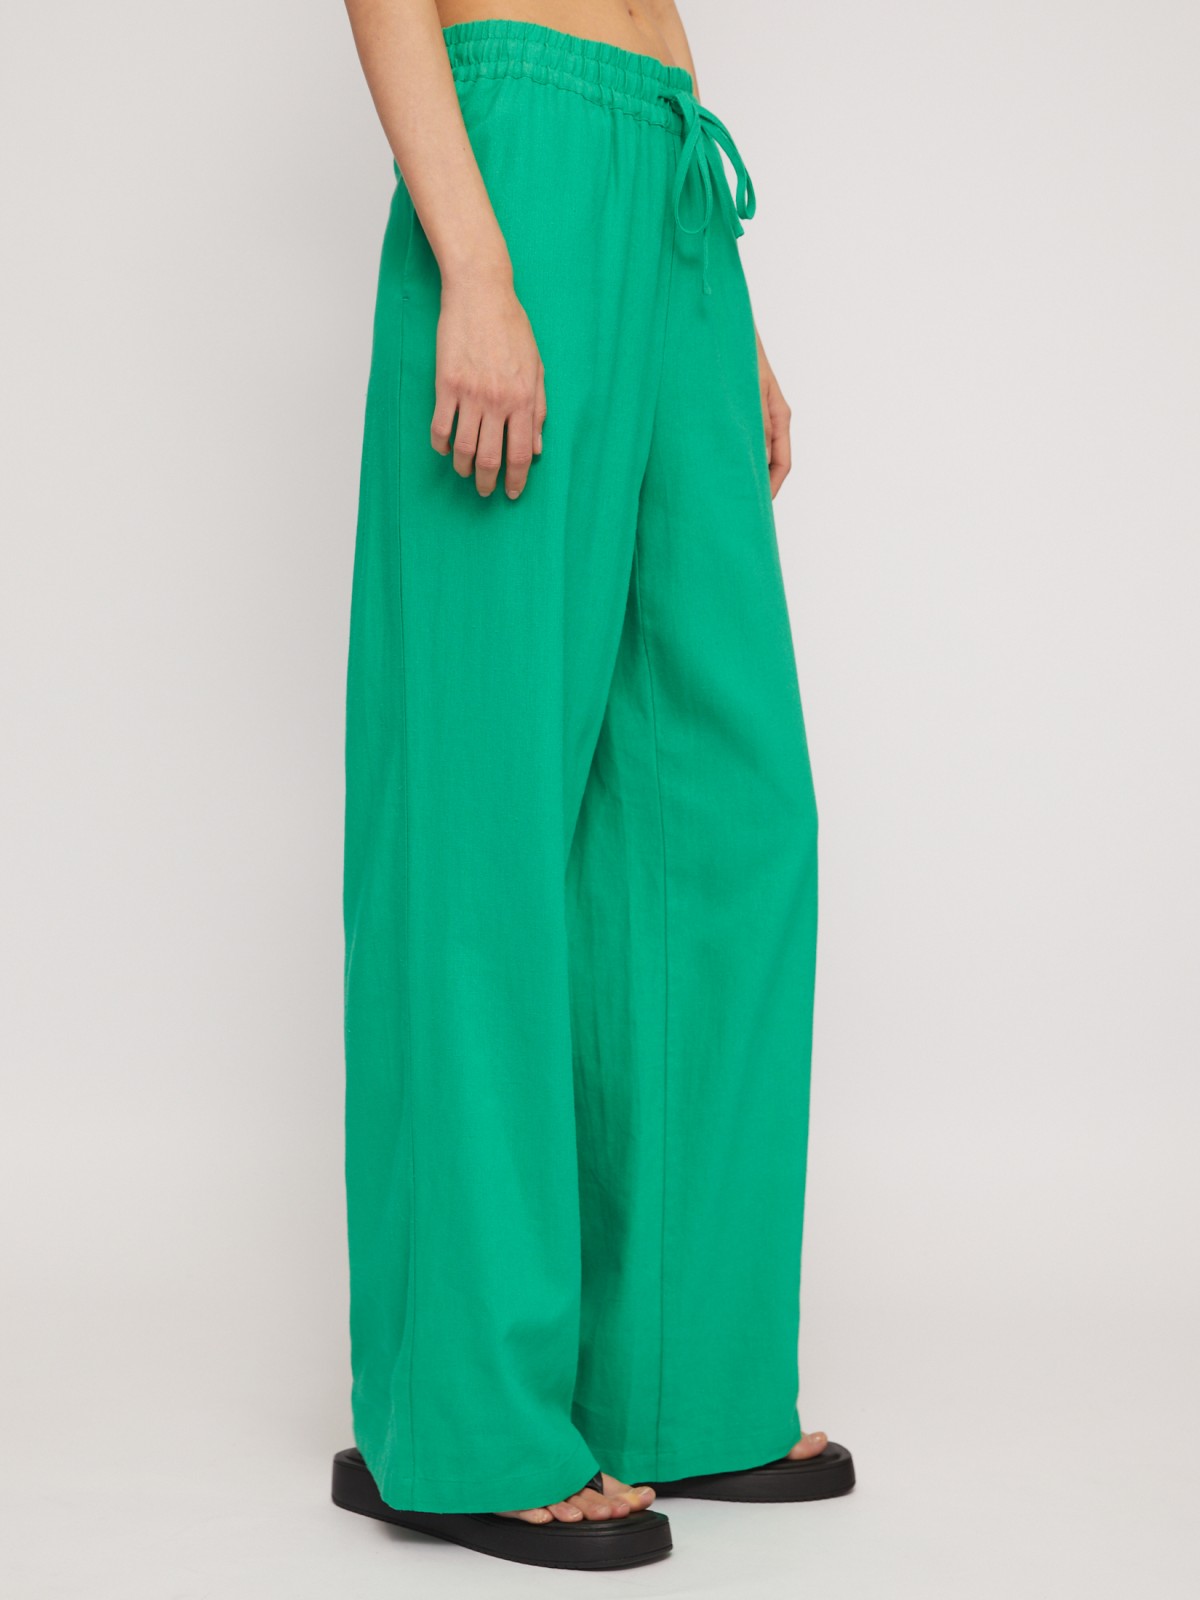 Льняные брюки на резинке с кулиской zolla 024247362053, цвет зеленый, размер S - фото 3